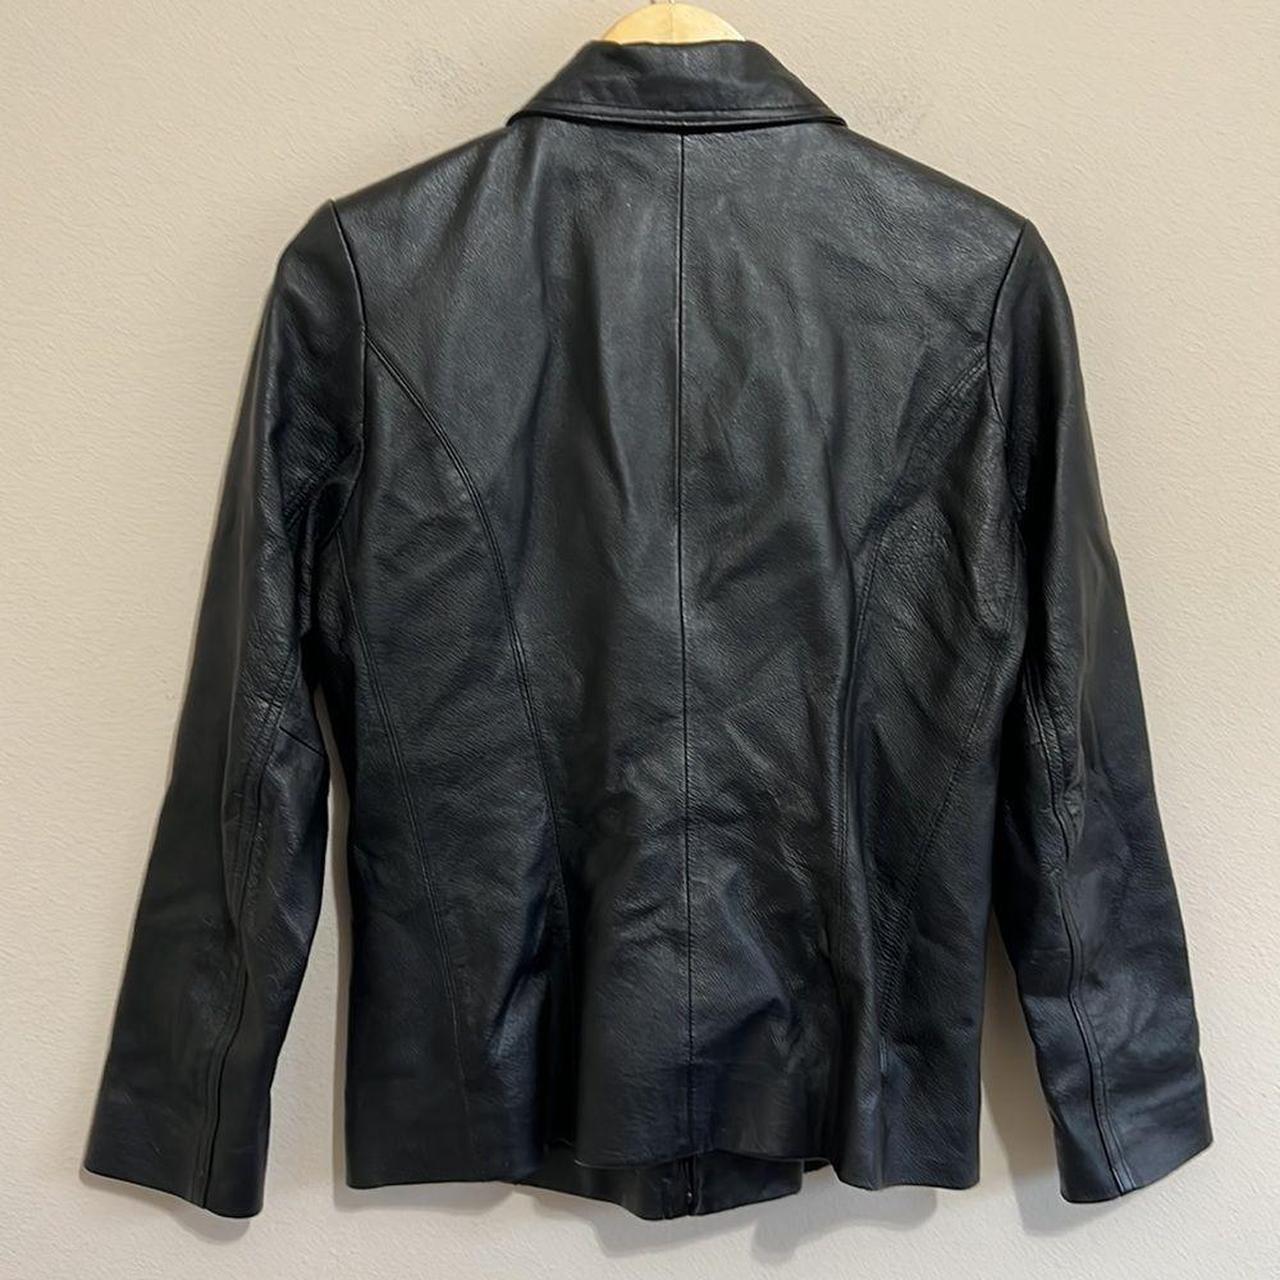 Worthington Black Leather Jacket Size: S Great... - Depop